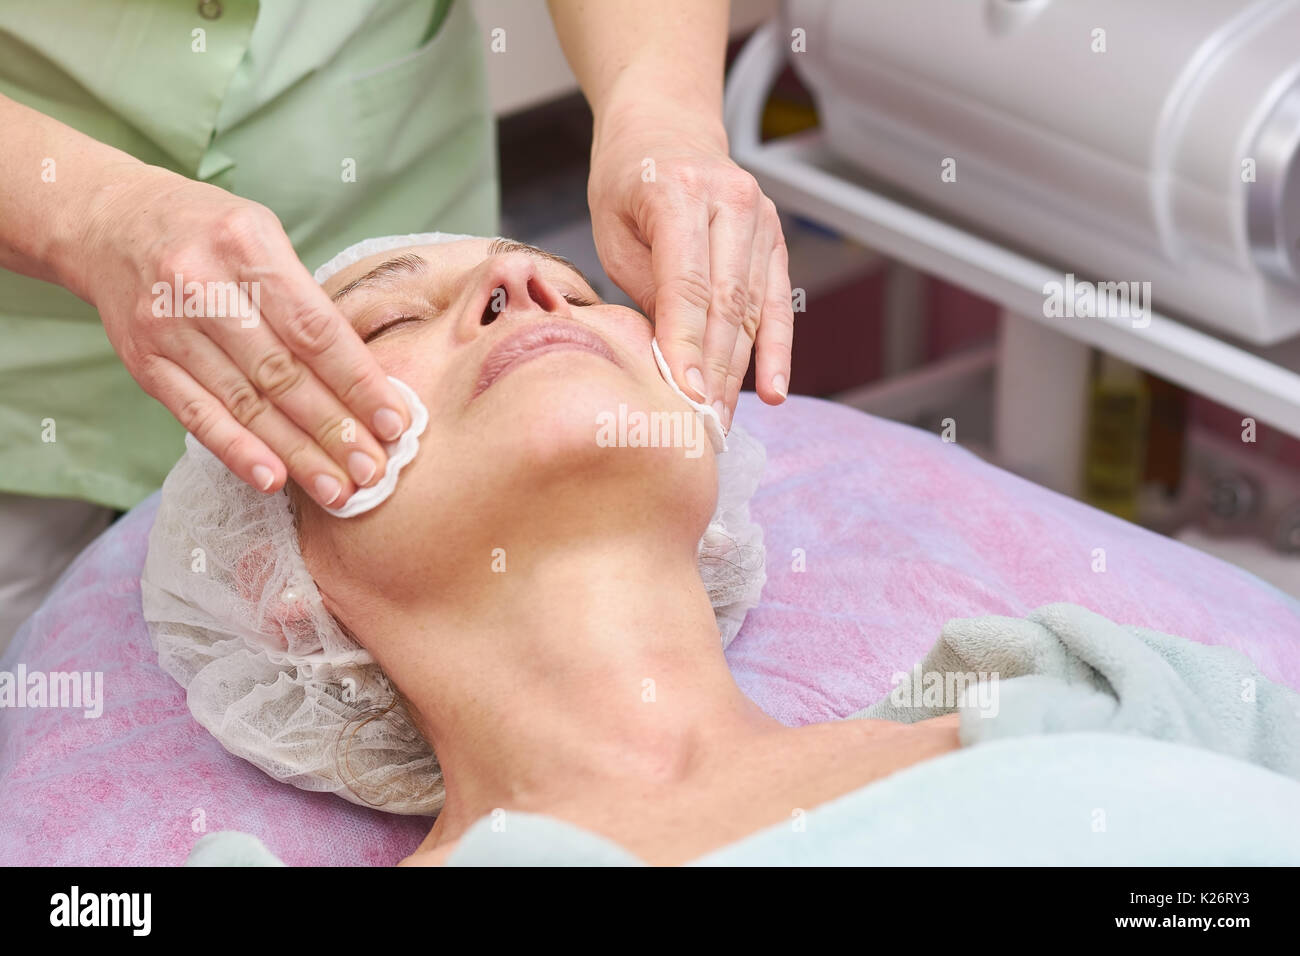 Nettoyage des mains visage féminin. Femme adulte dans la région de beauty clinic. Banque D'Images